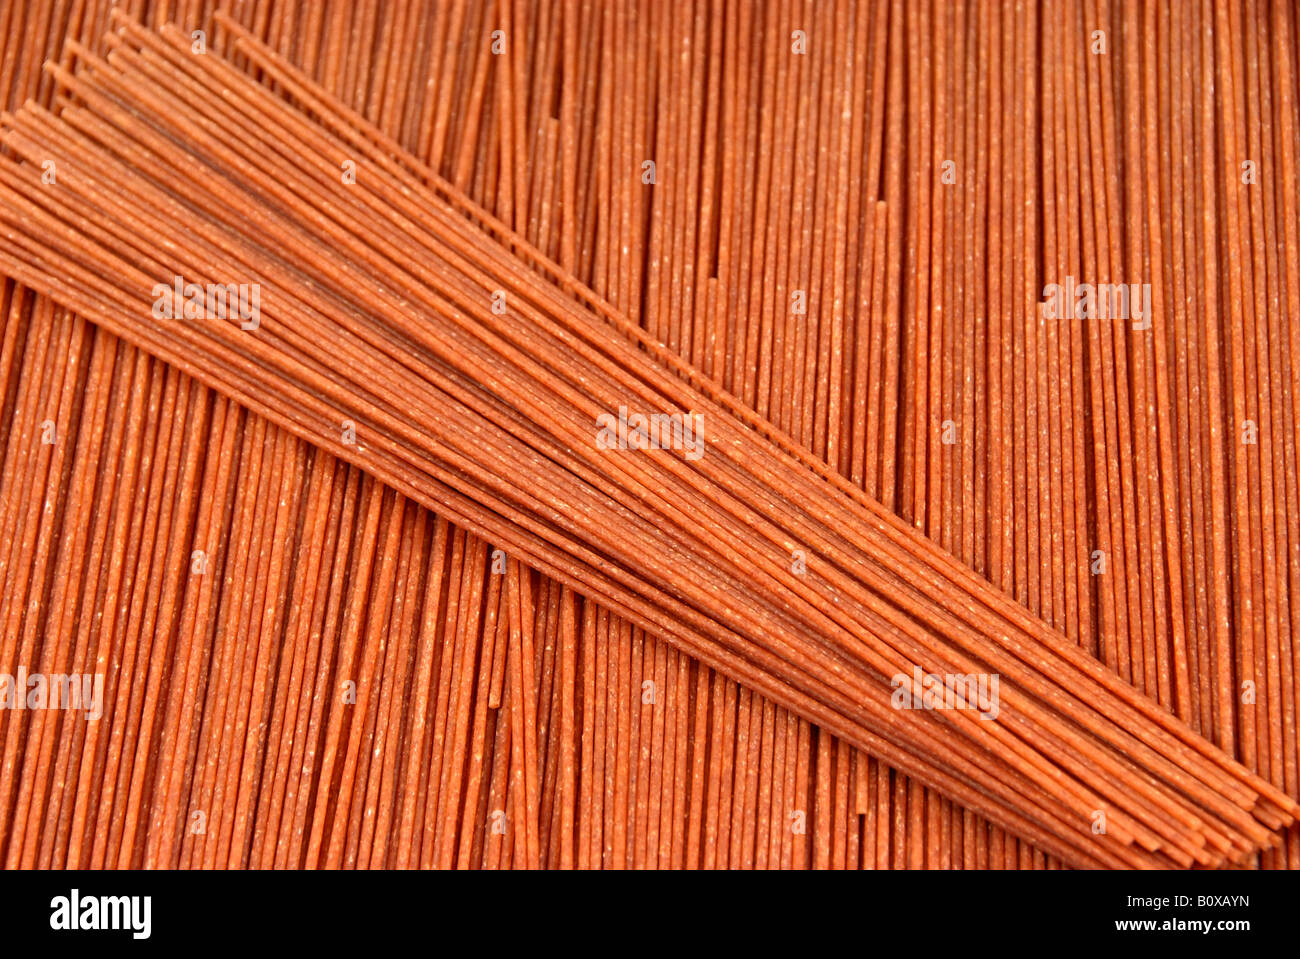 spelt wheat (Triticum spelta), wholemeal spaghetti Stock Photo